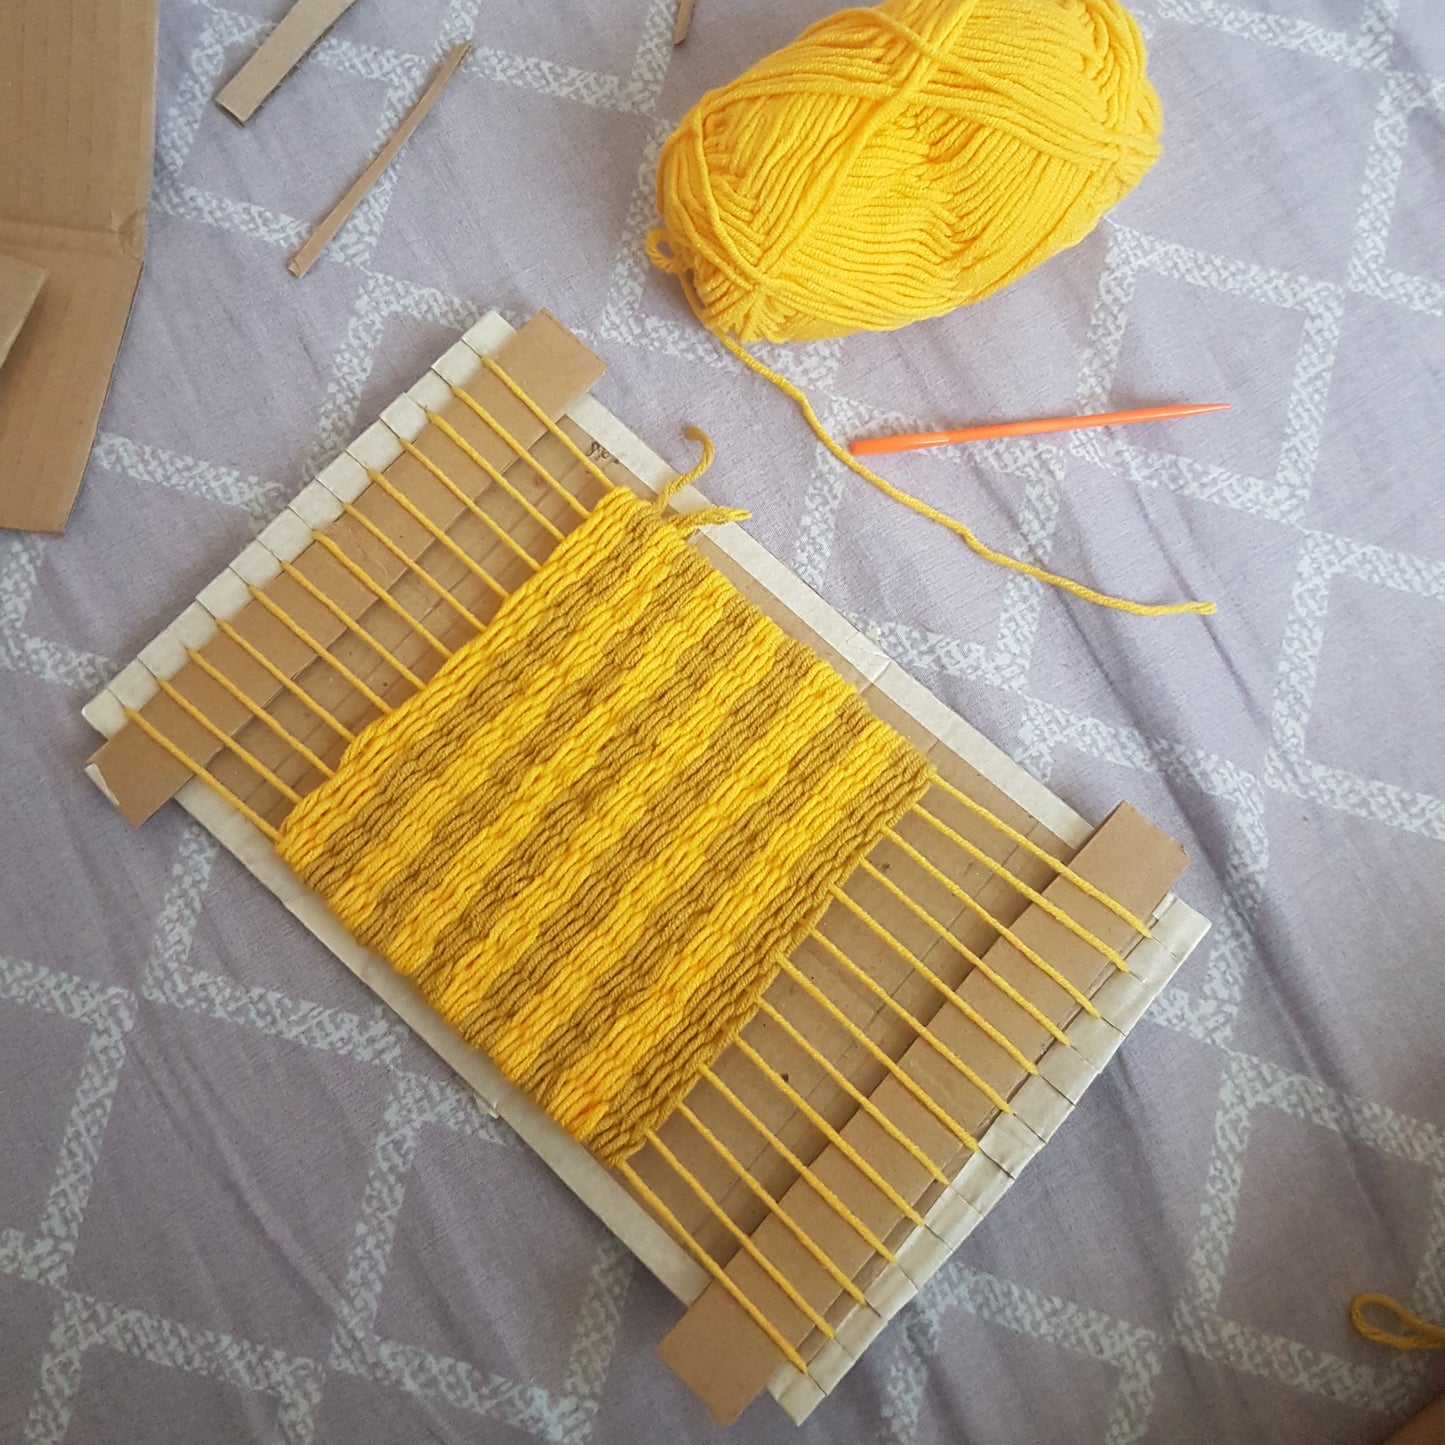 Cardboard loom weaving 